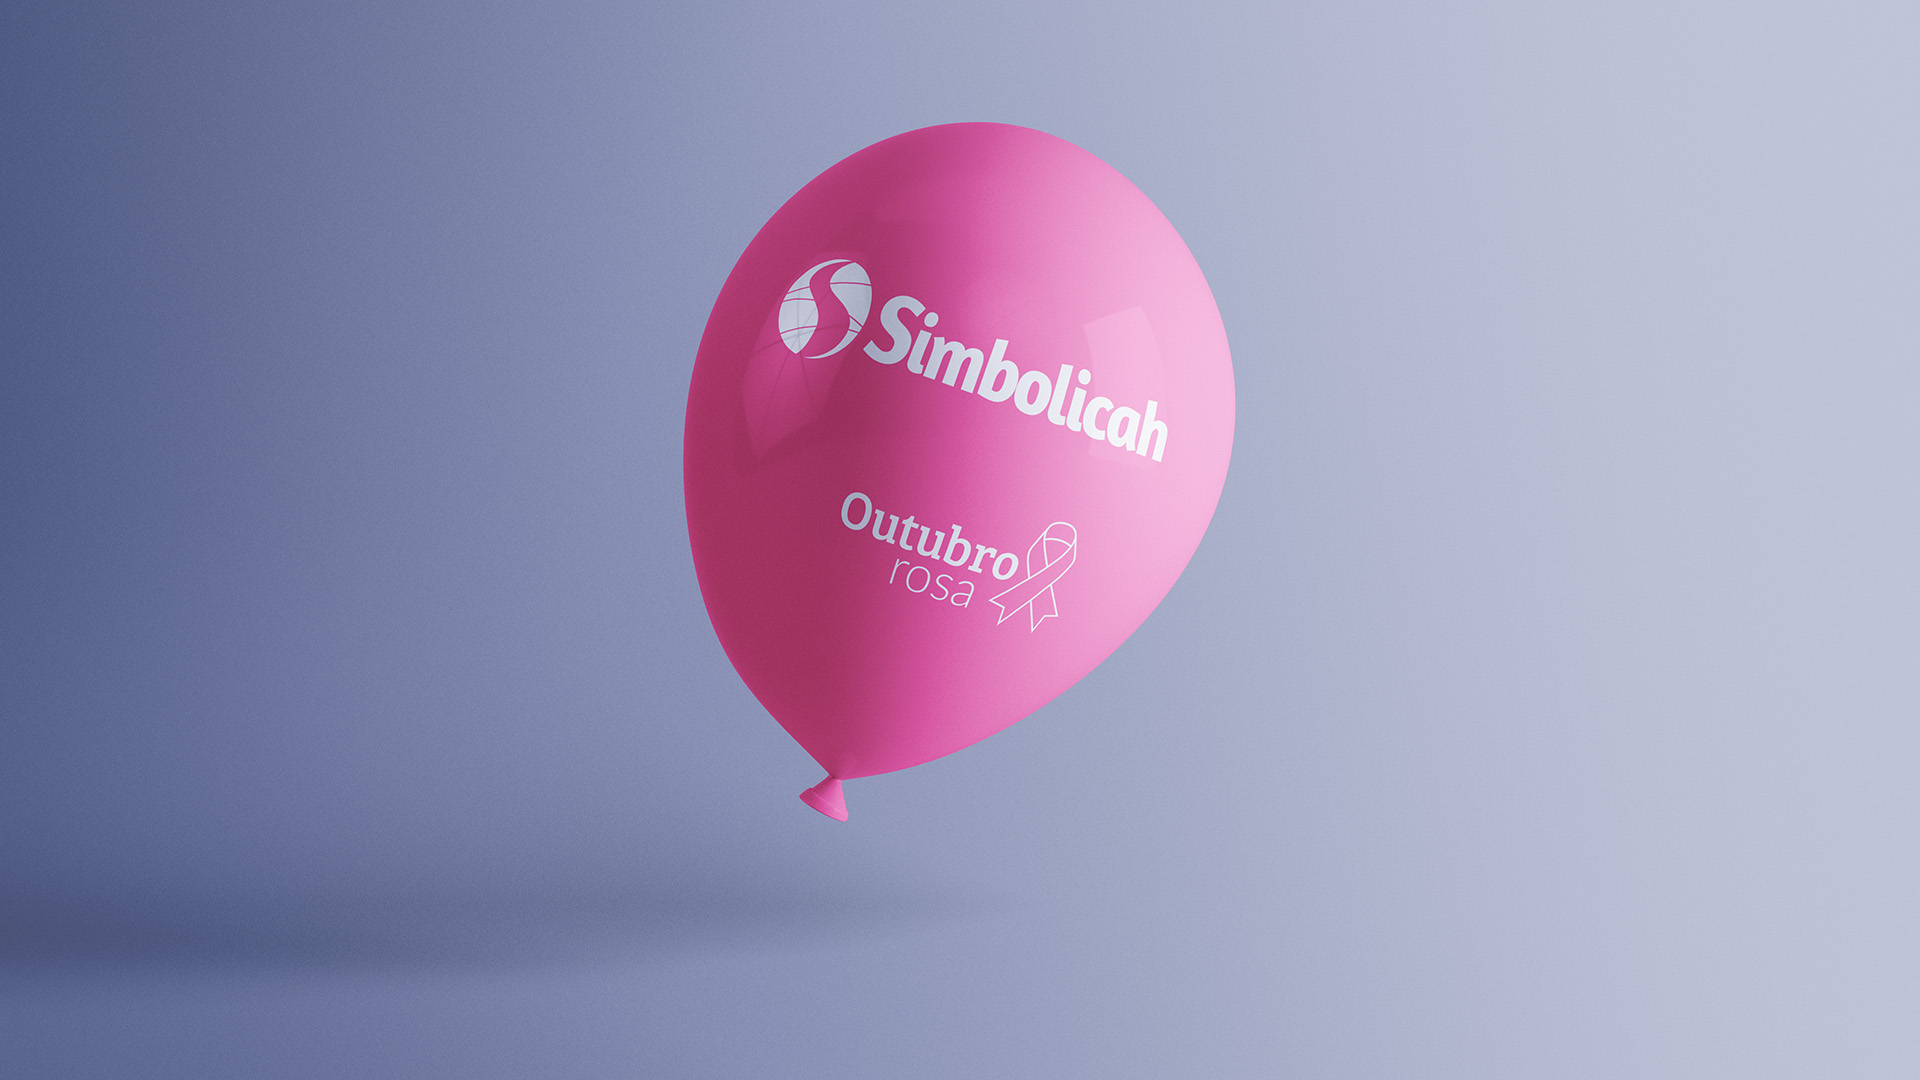 Imagem de balão com identidade visual Simbolicah.